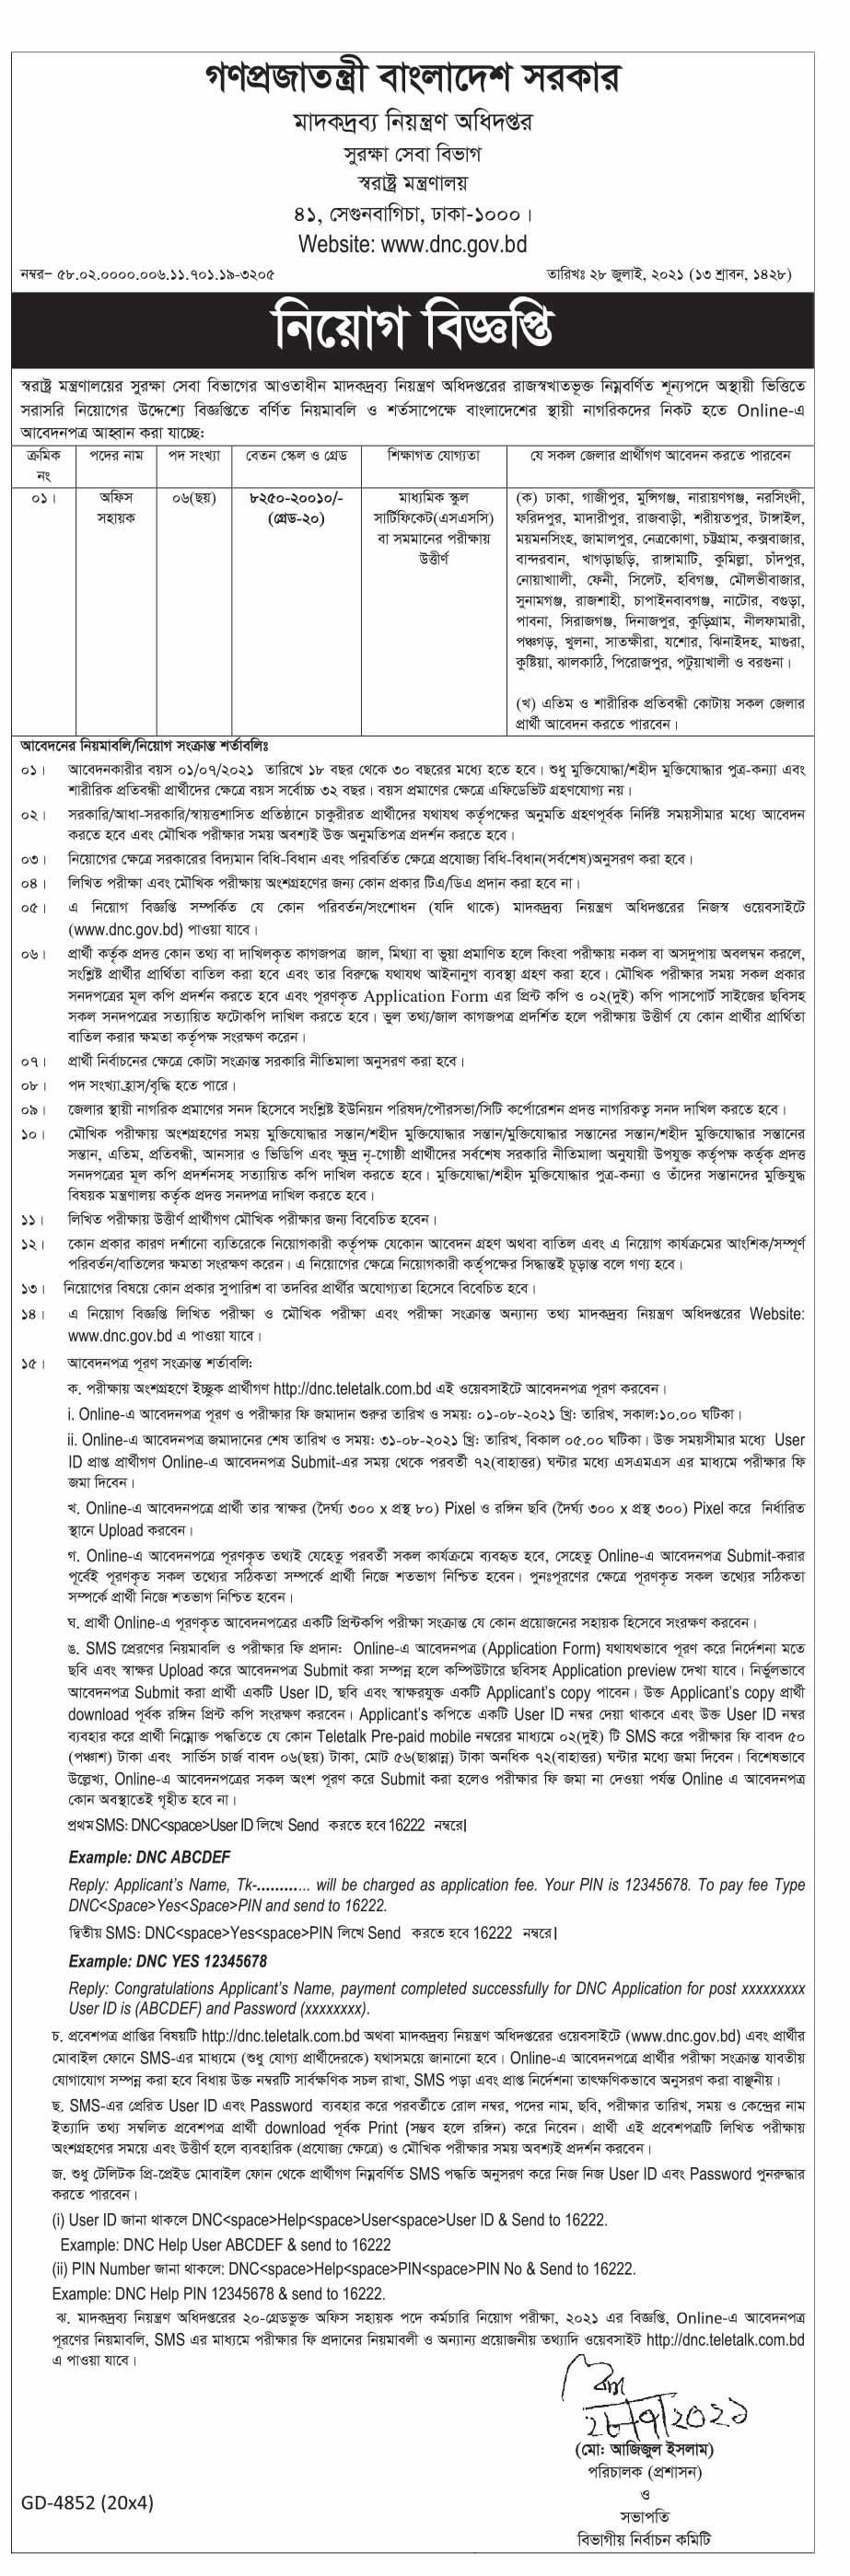 প্রথম আলো সাপ্তাহিক চাকরির খবর - চাকরি বাকরি ২০ আগস্ট ২০২১ - Prothom Alo Saptahik Chakrir Khobor - Chakri Bakri potrika 20  August 2021 - প্রথম আলো চাকরি বাকরি ২০-০৮-২০২১ - প্রথম আলো চাকরির খবর পত্রিকা ২০২১-২০২২ - Prothom Alo Saptahik Chakrir Khobor 2021 - 2022